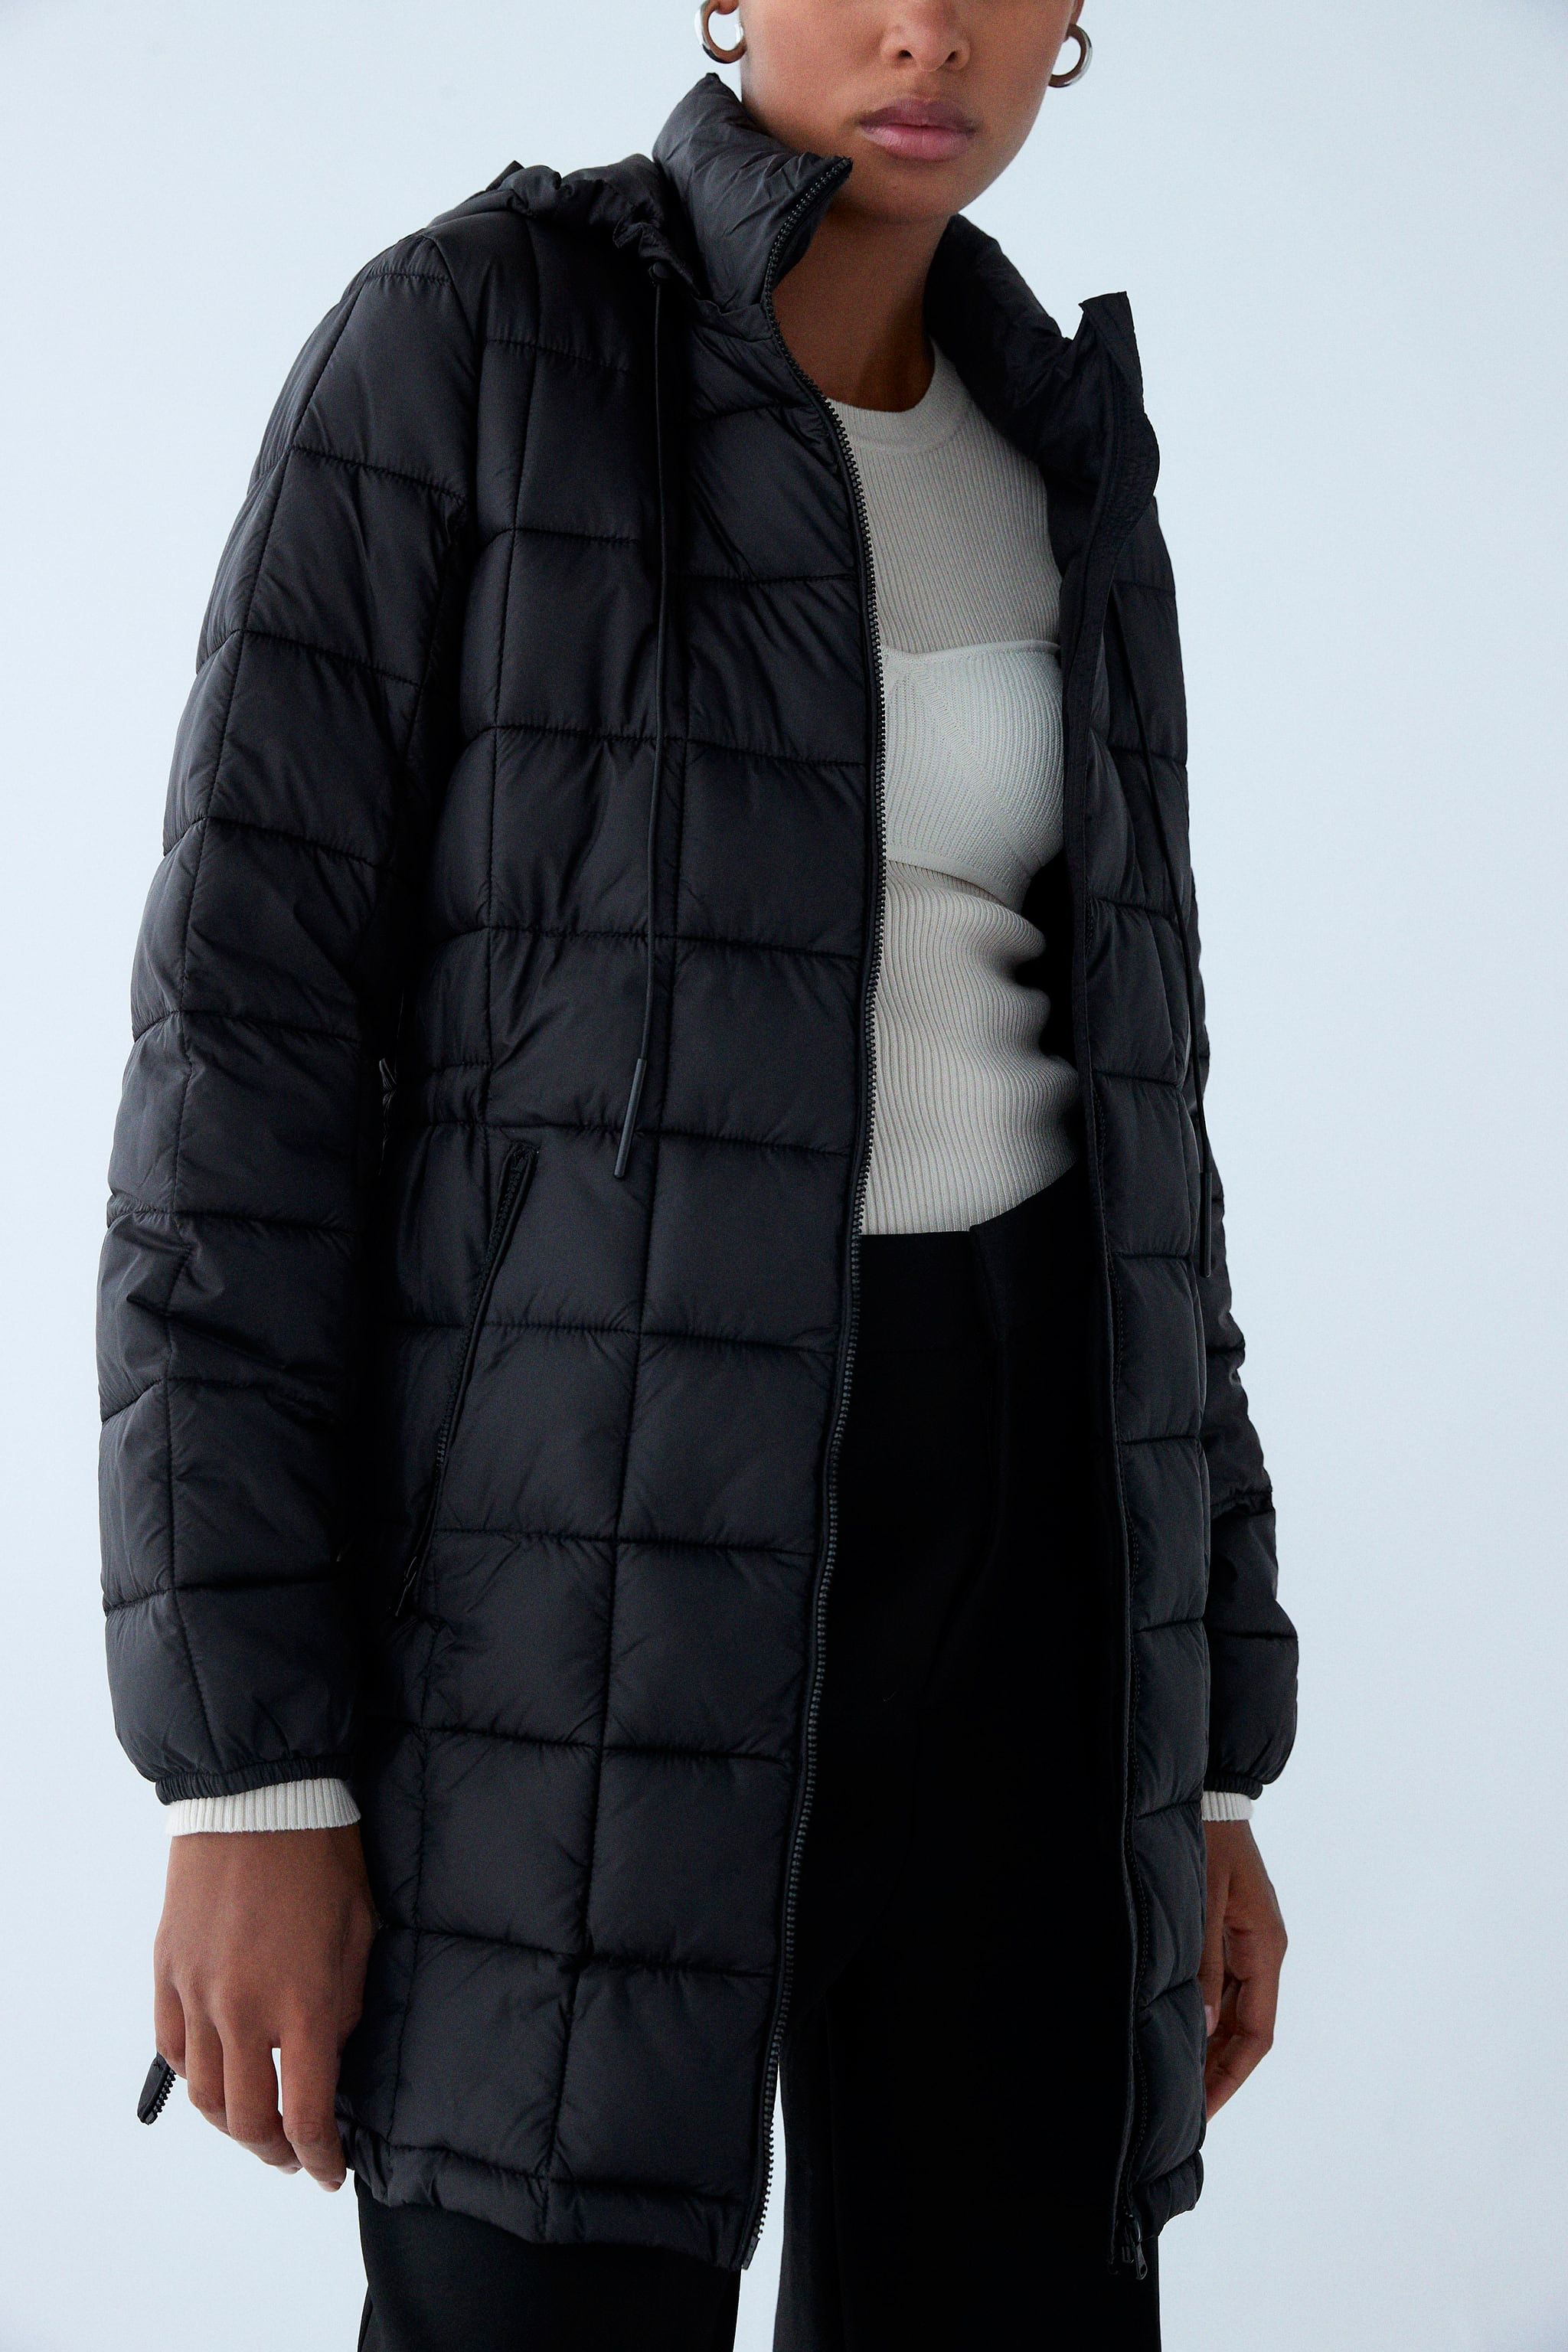 Actriz Normal contar hasta El abrigo plumífero negro sostenible de Zara que arrasa en ventas